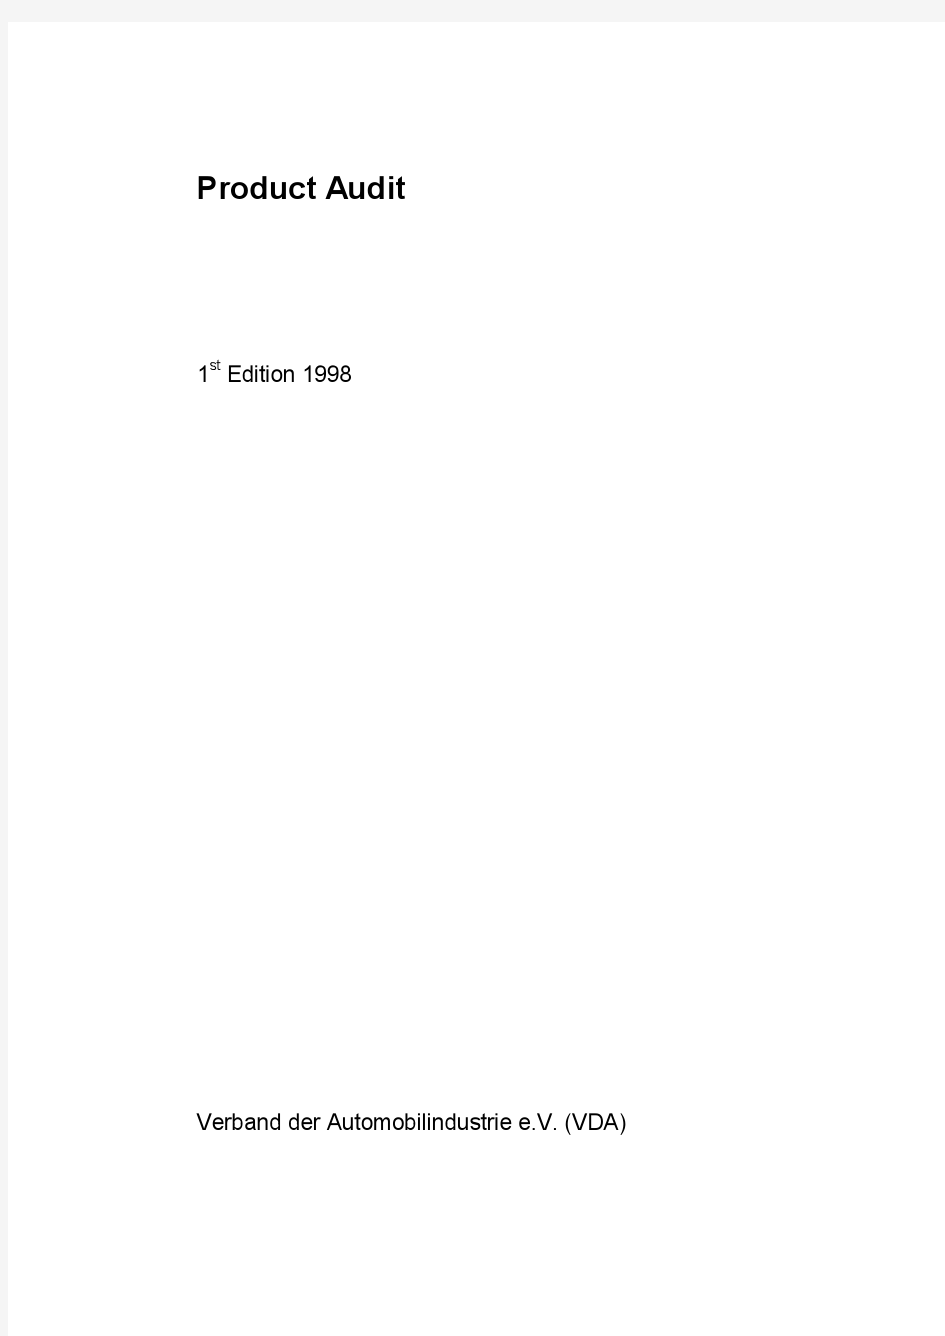 德国汽车工业质量标准-vda6.Part5(ProductAudit)